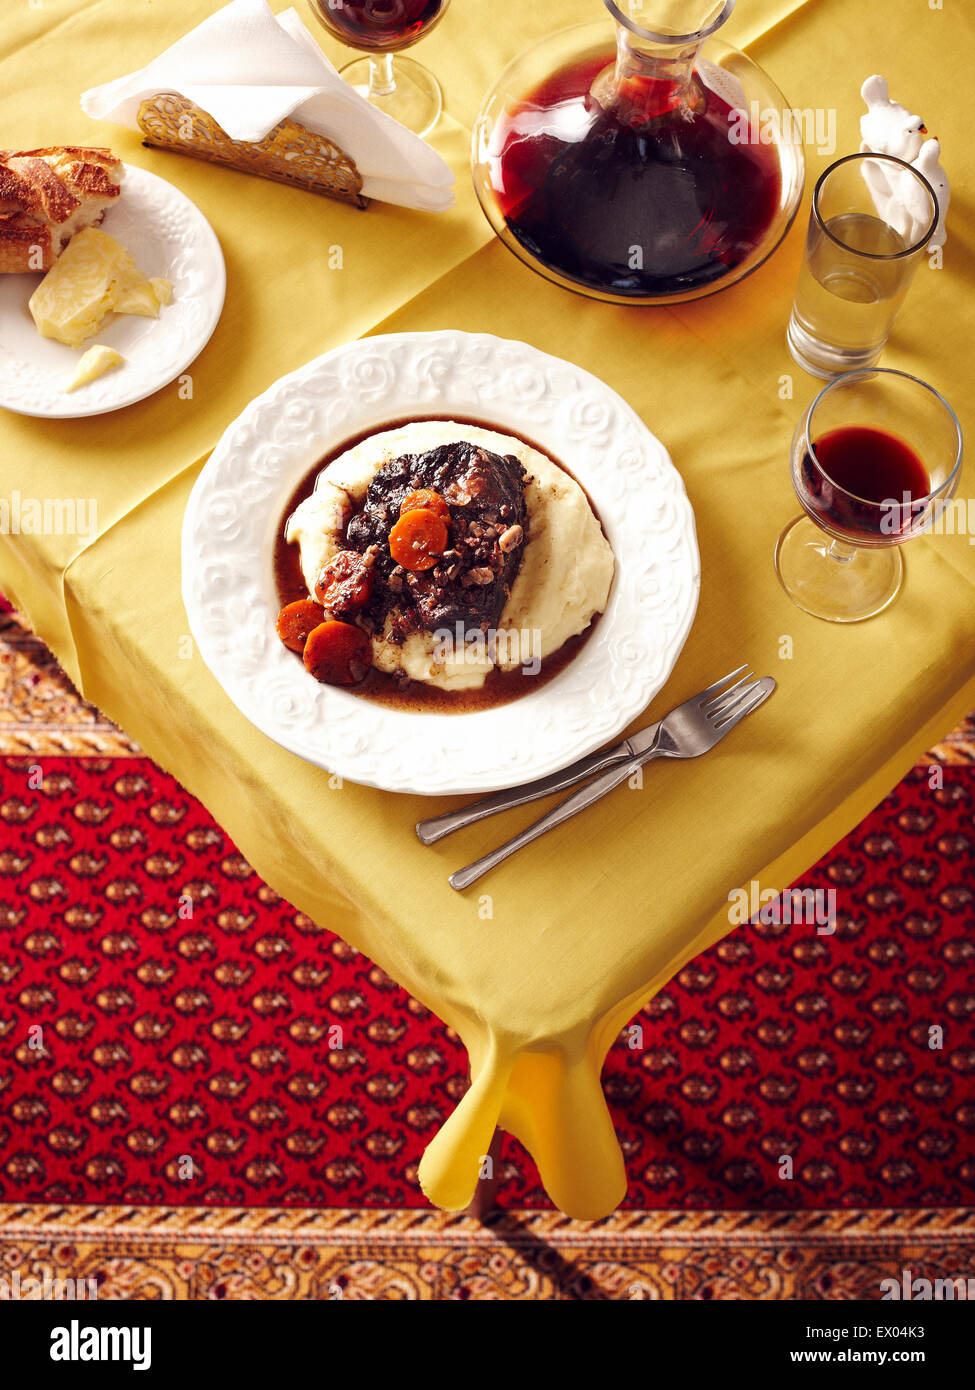 Vue de dessus de table avec ragoût de joue de boeuf et le vin rouge carafe Banque D'Images